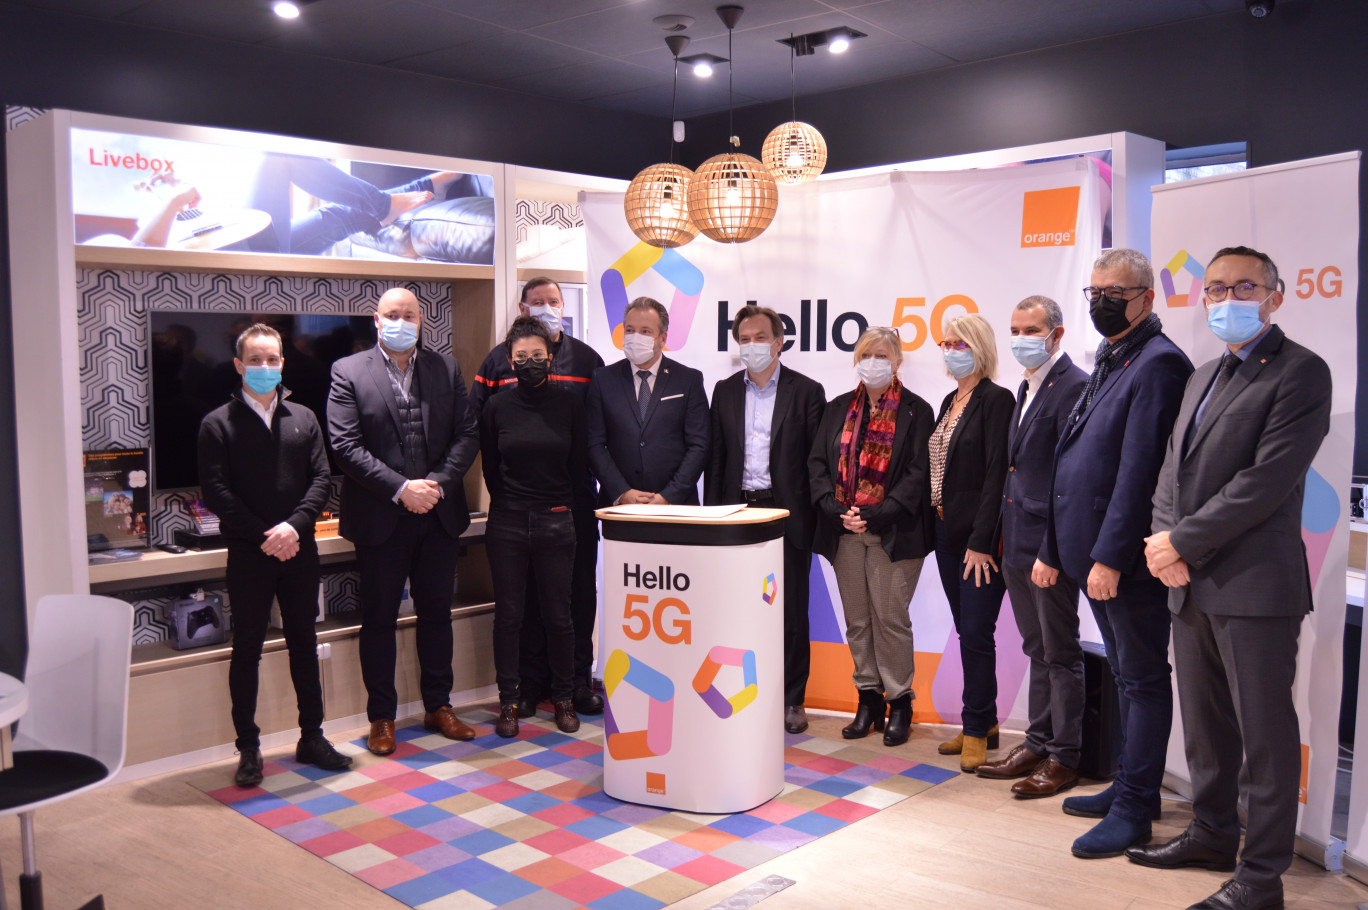 Orange a lancé la 5G à Beauvais, le 15 décembre, en présence de nombreux acteurs économiques et politiques locaux.